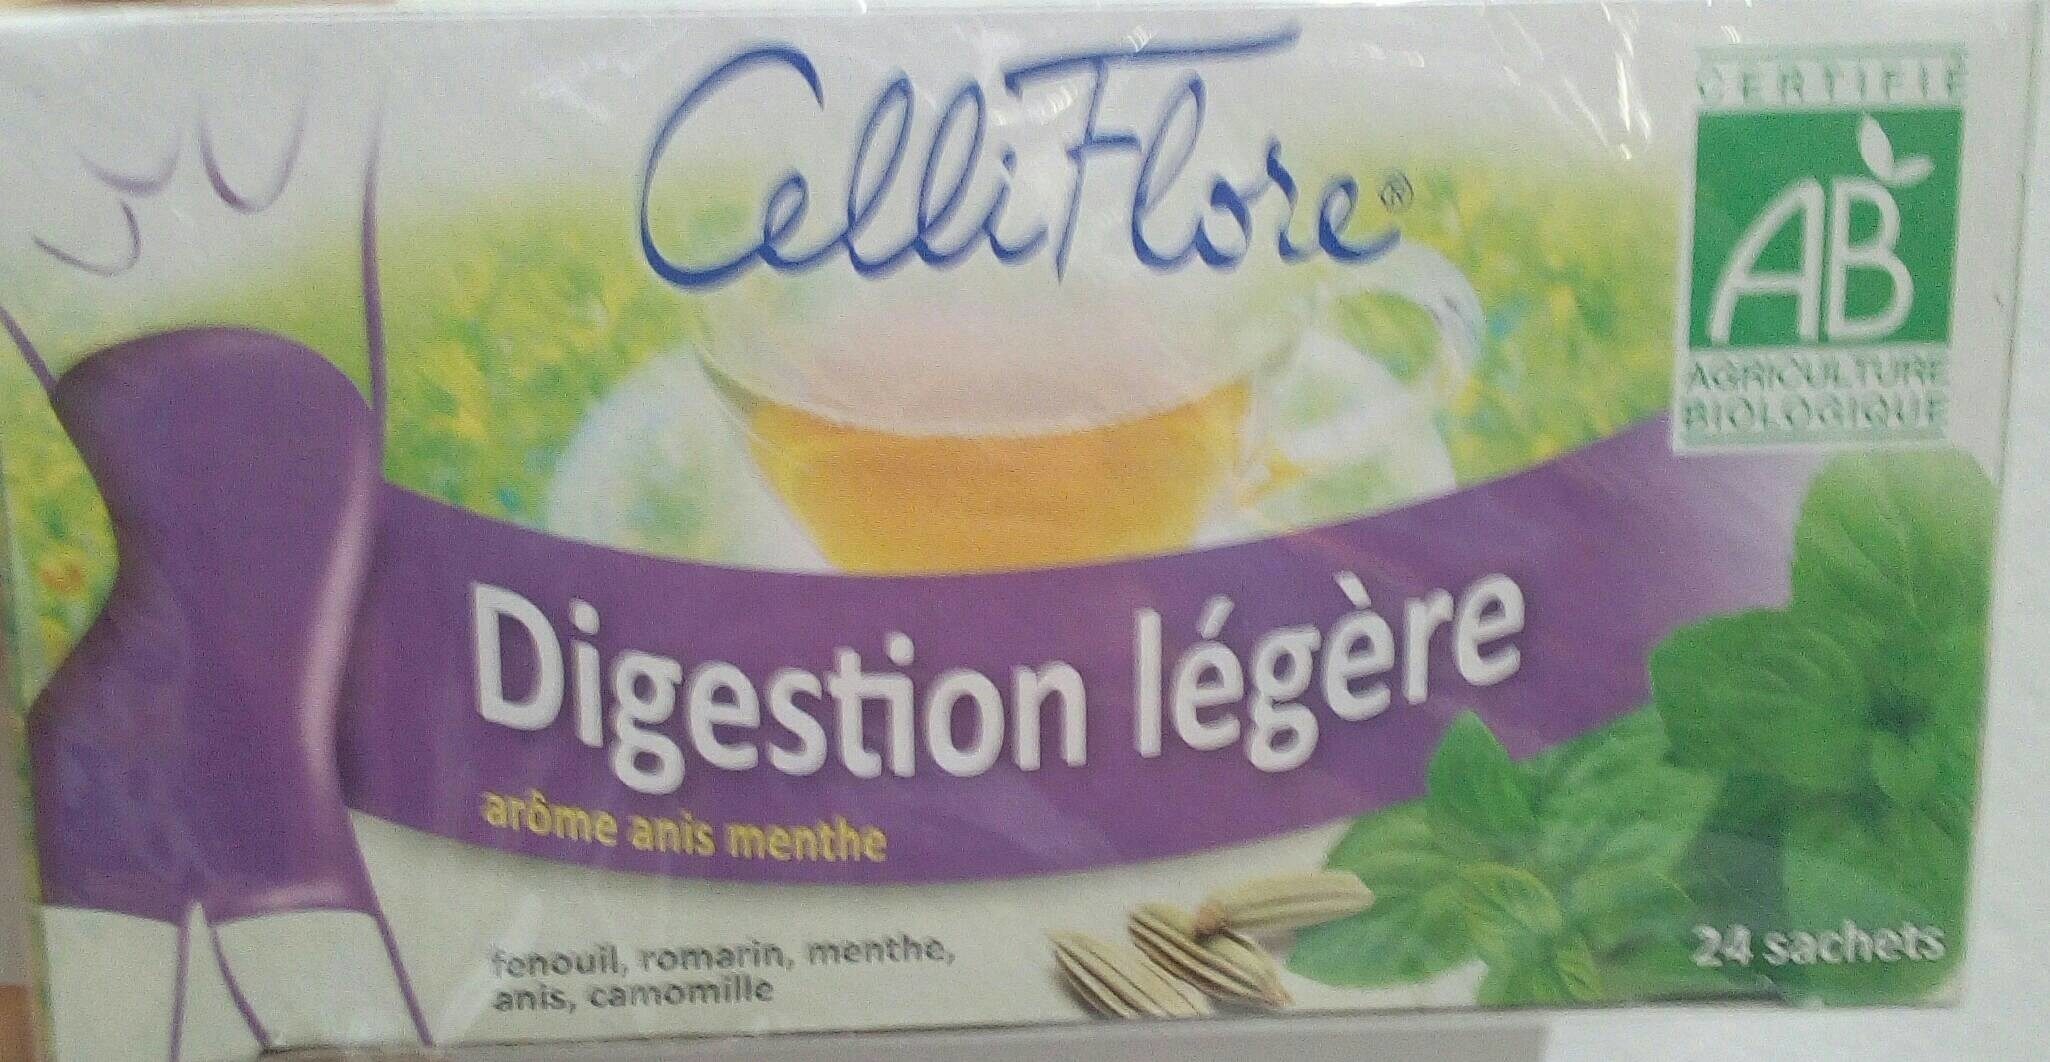 Celliflore Digestion Legere. BT - Produit